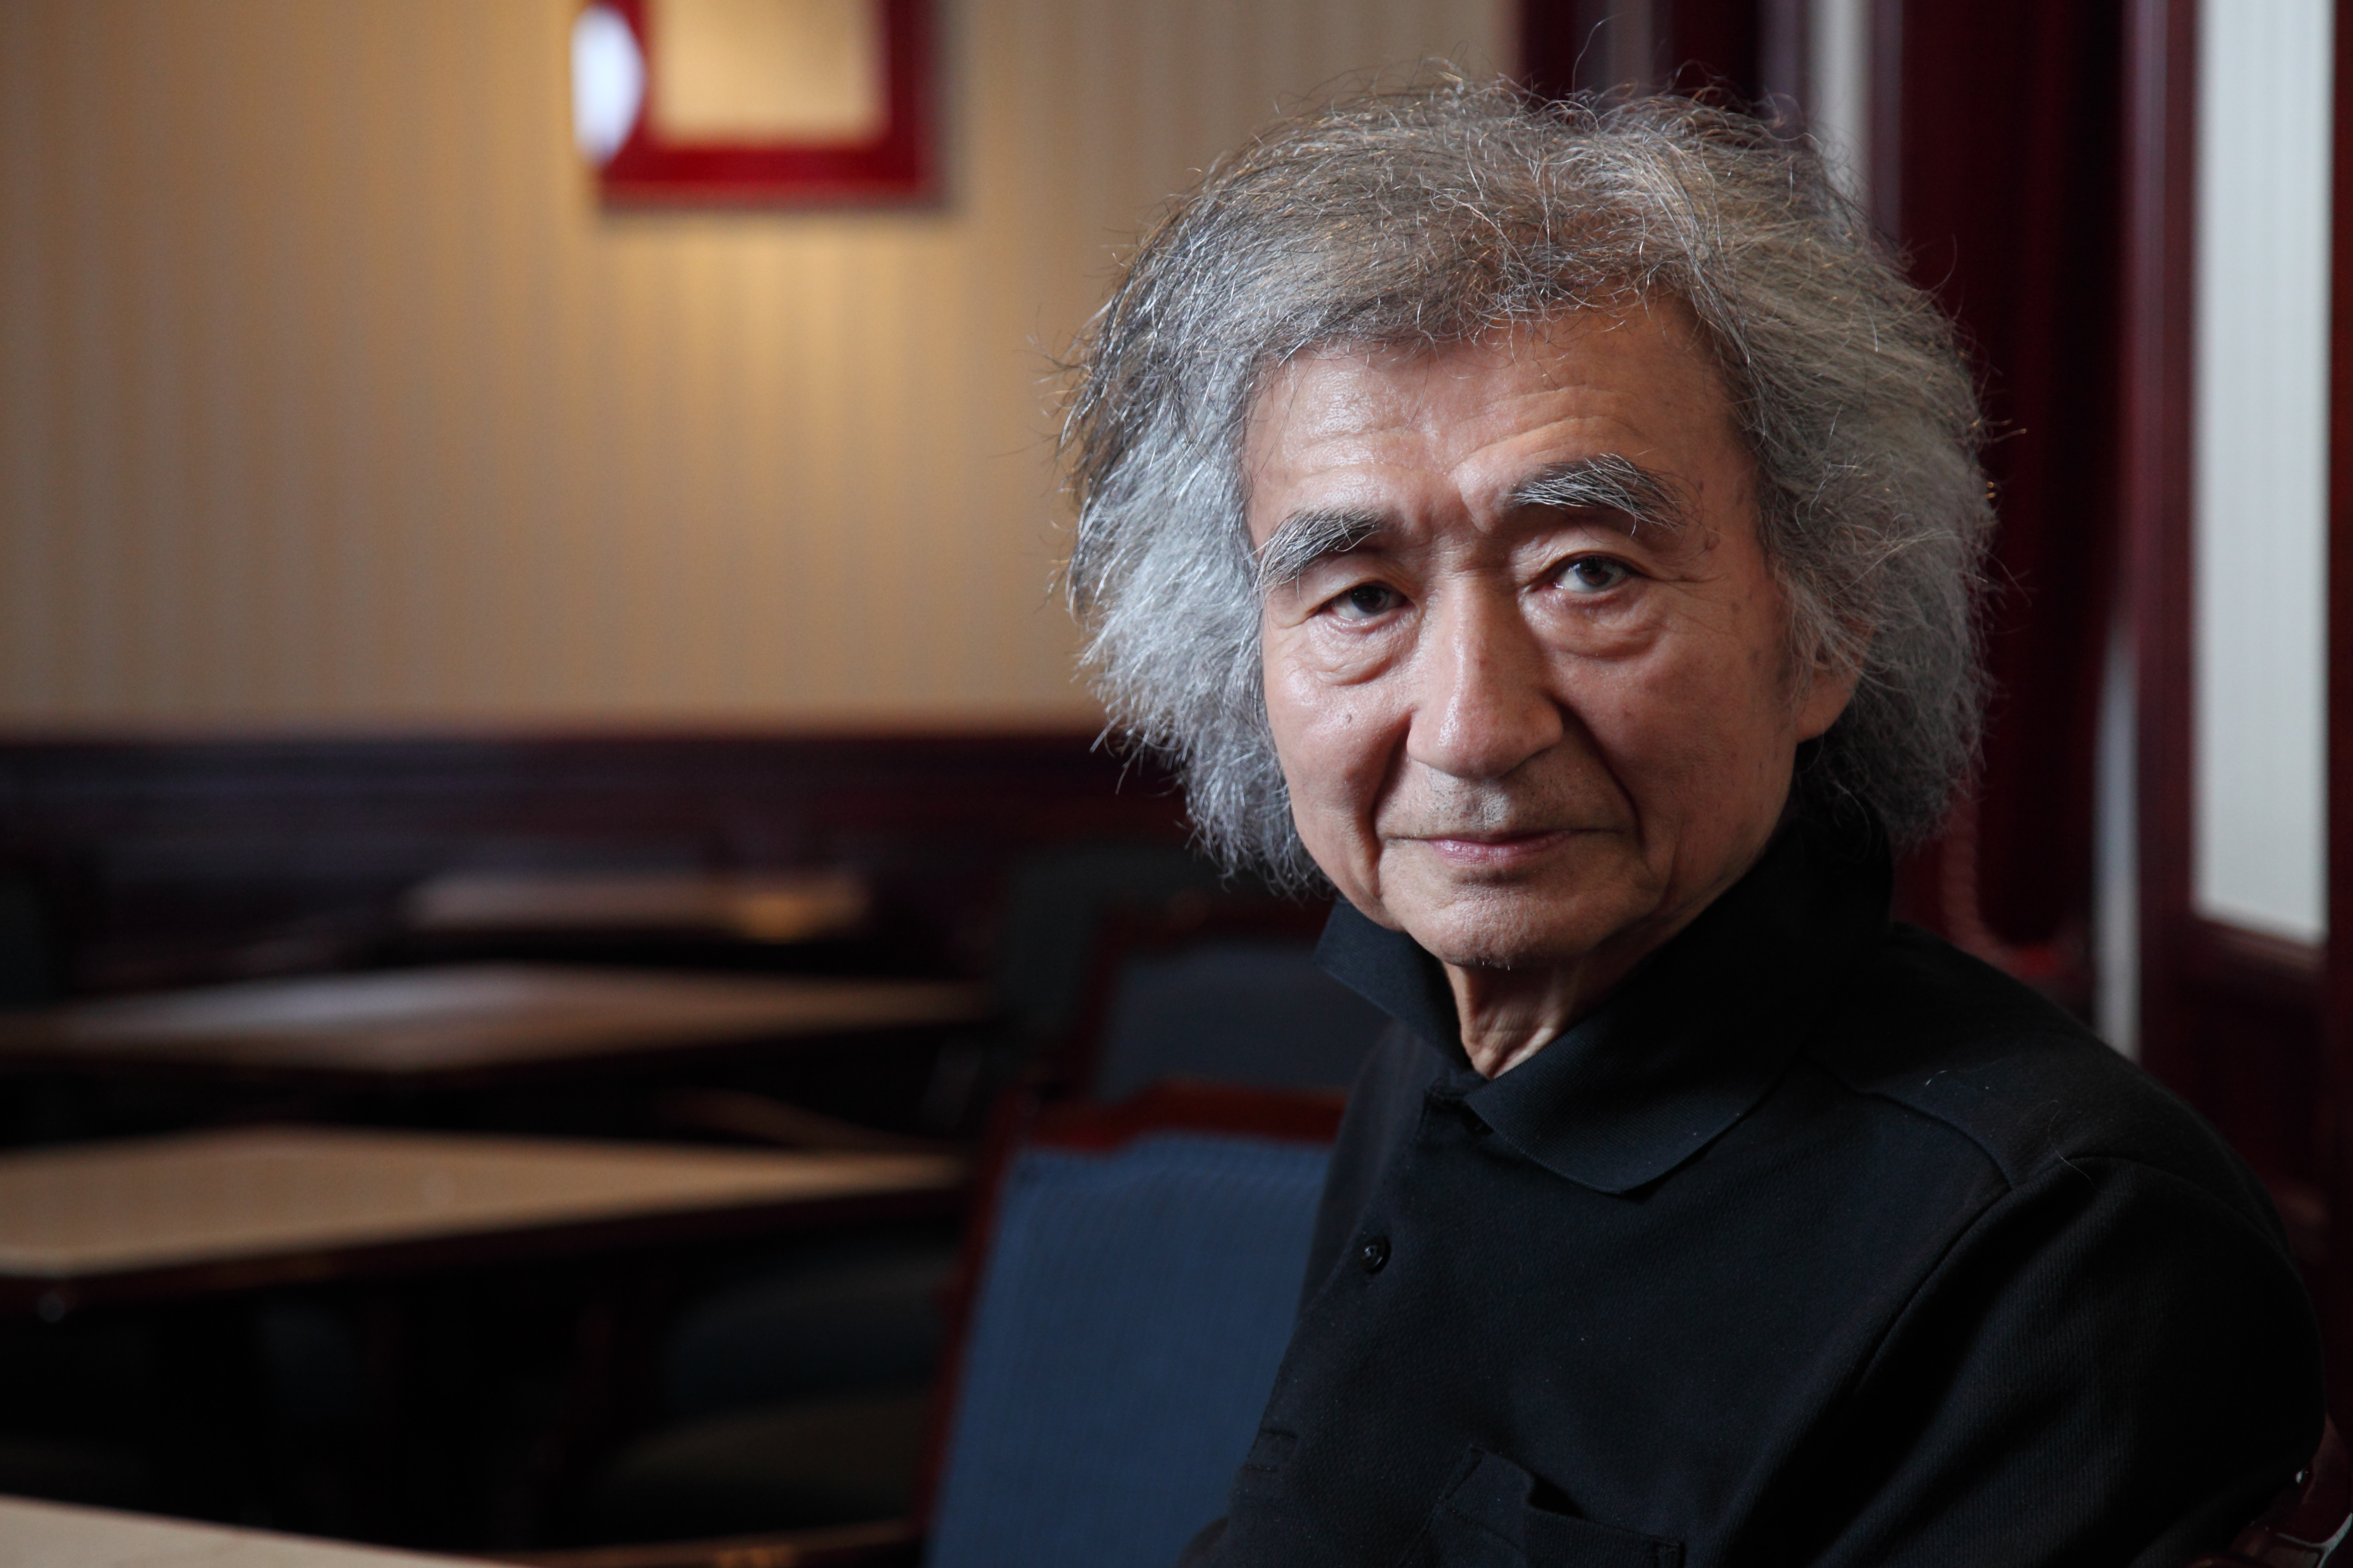 Conductor Seiji Ozawa won the Grammy Award for best opera recording Monday. | CHIEKO KATO